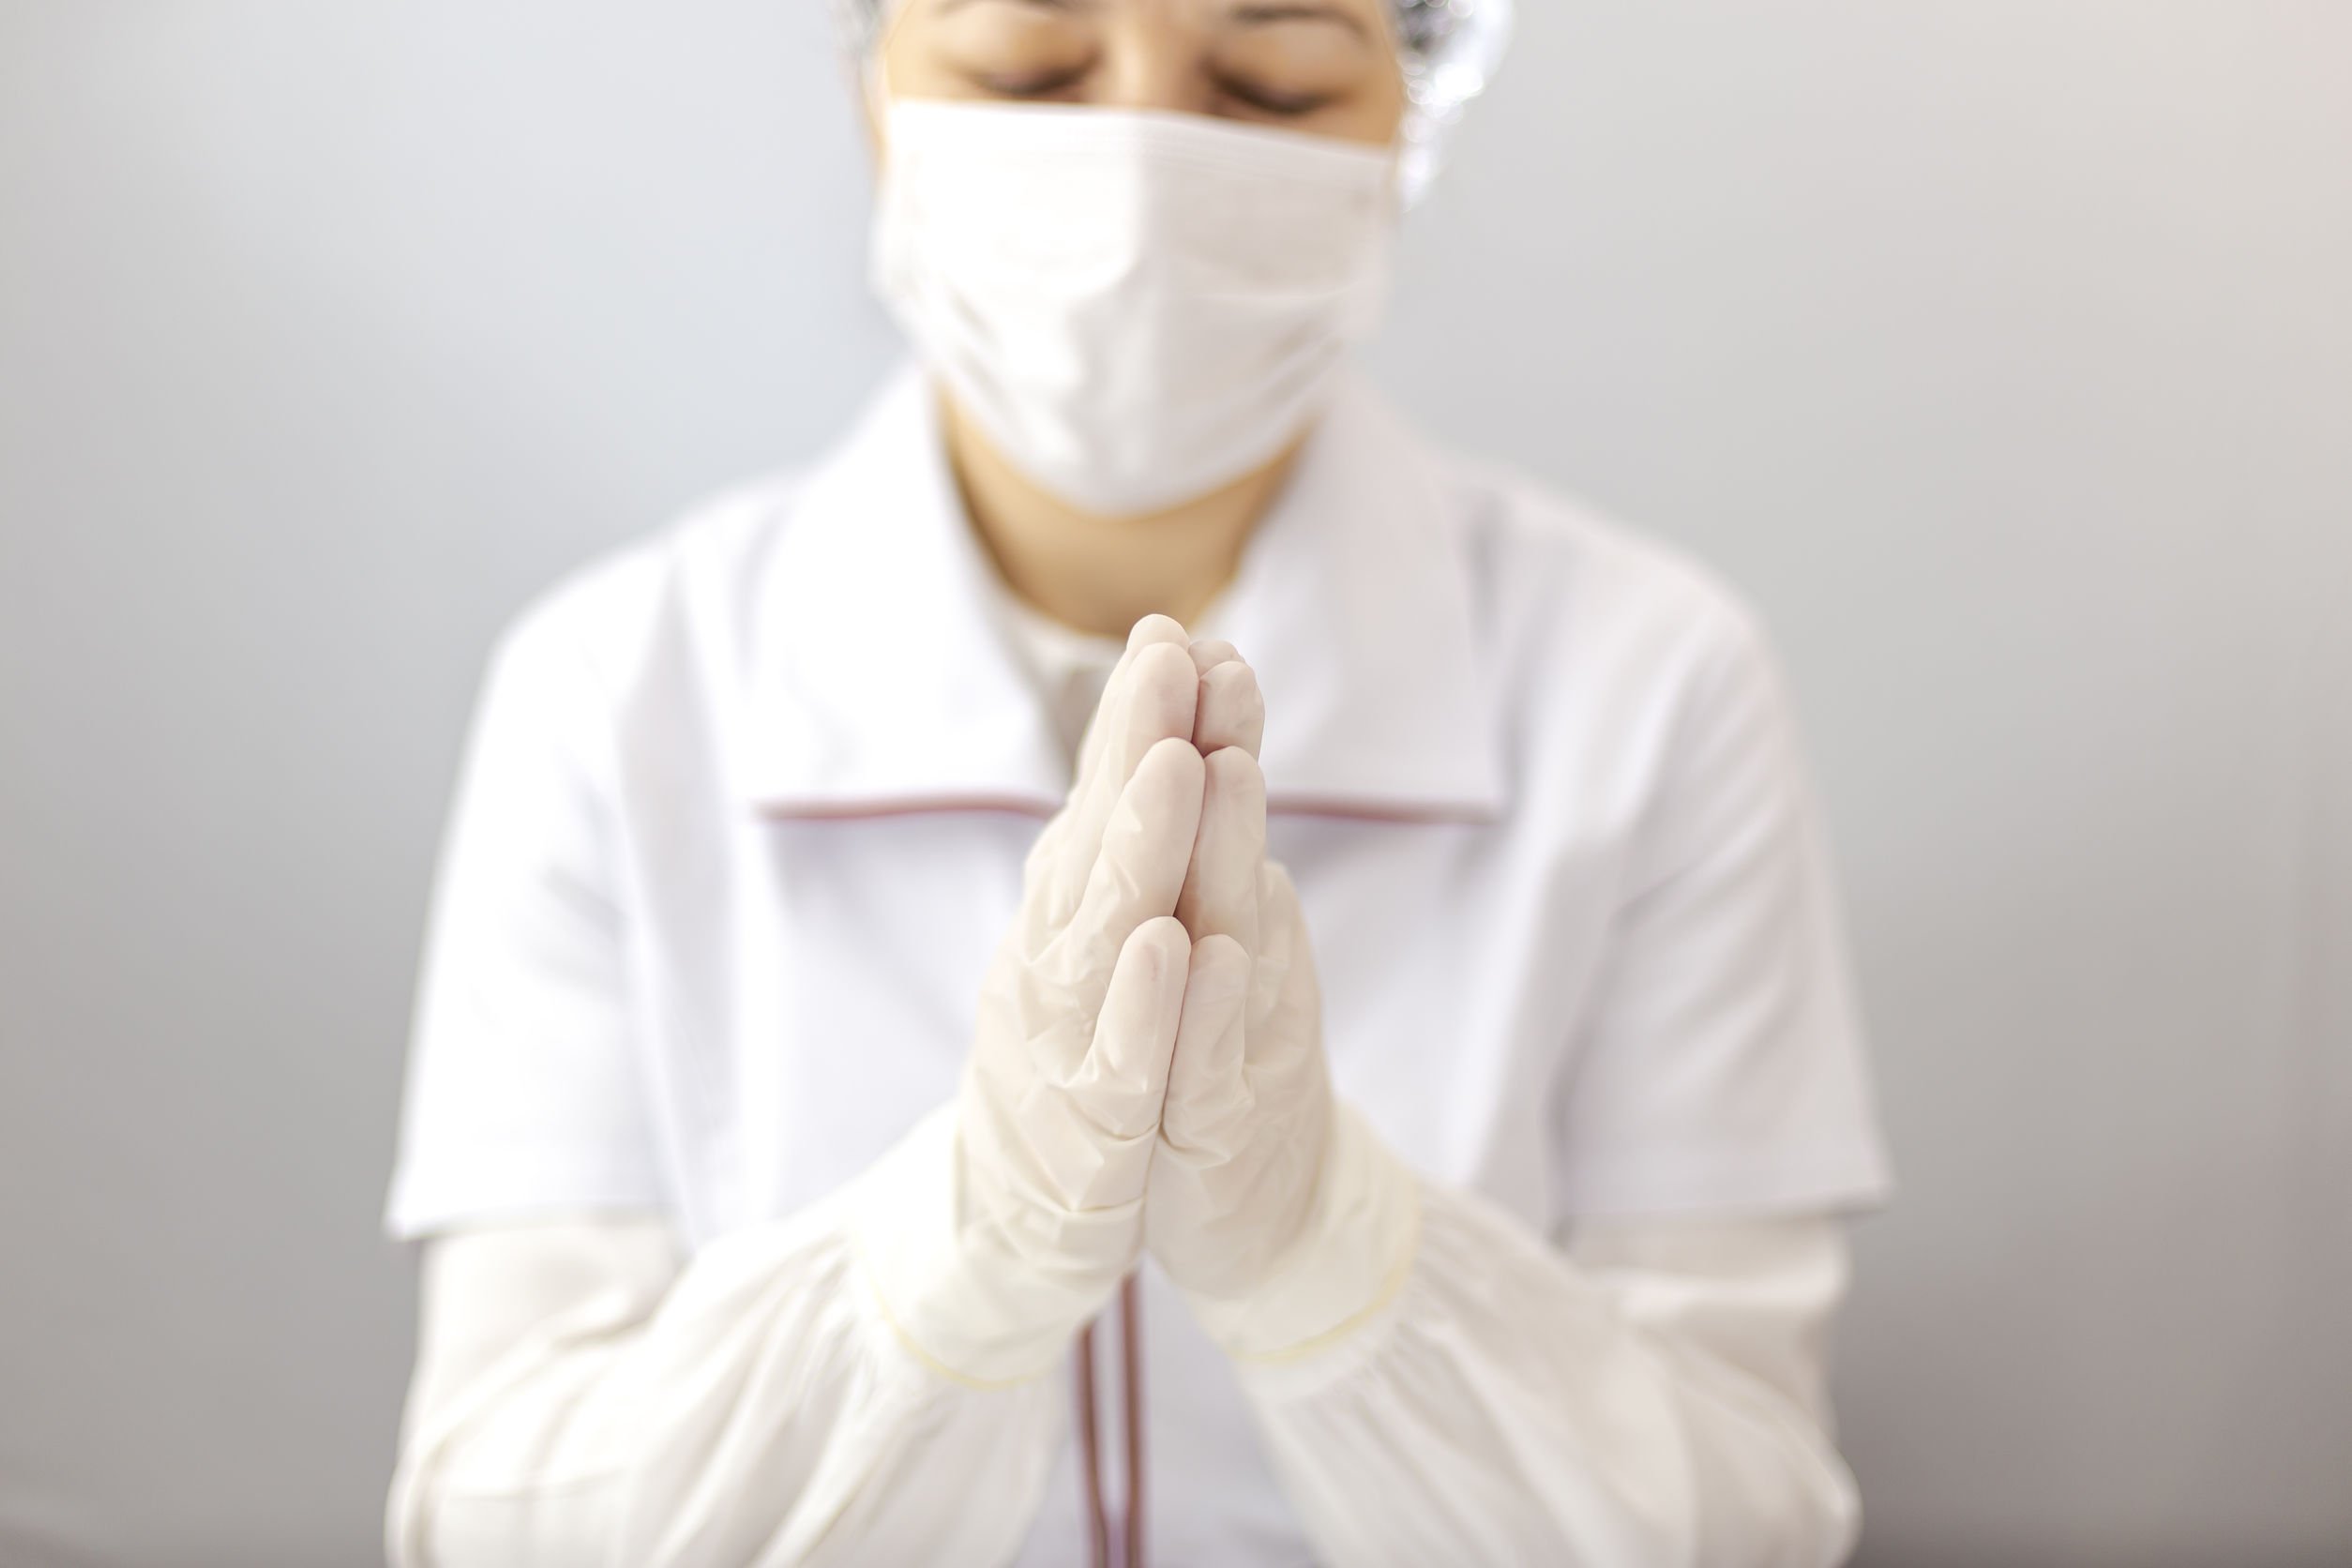 Médica usando touca, luvas e máscara, com as mãos unidas, orando